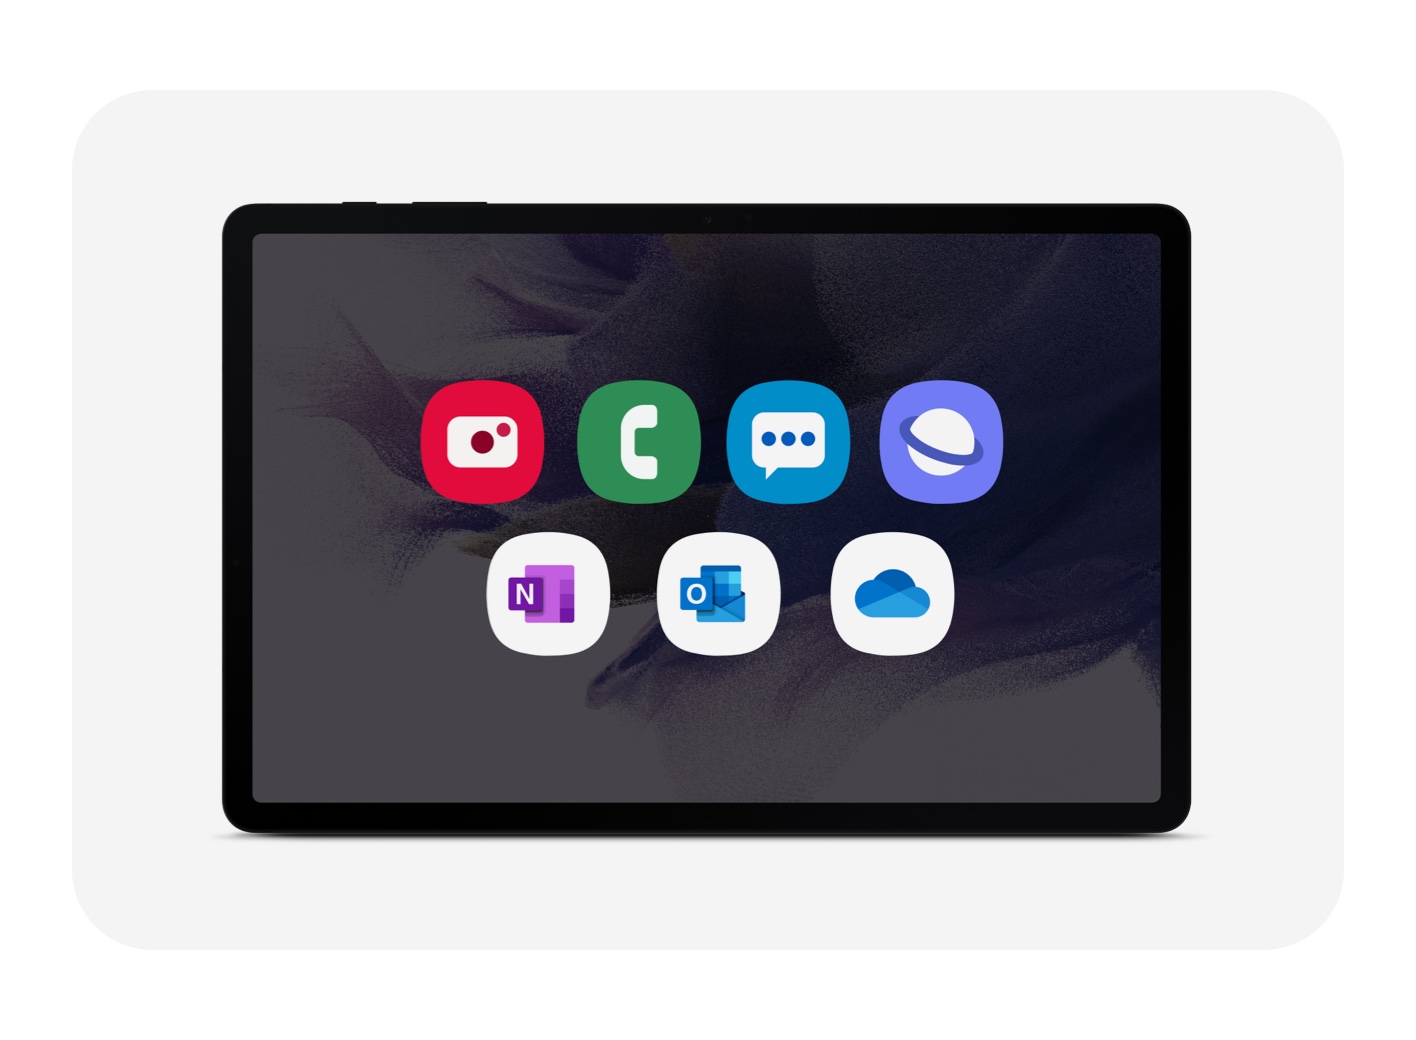 SM-T733NZKAXAR | Galaxy Tab S7 FE, 64GB, Mystic Black (Wi-Fi 